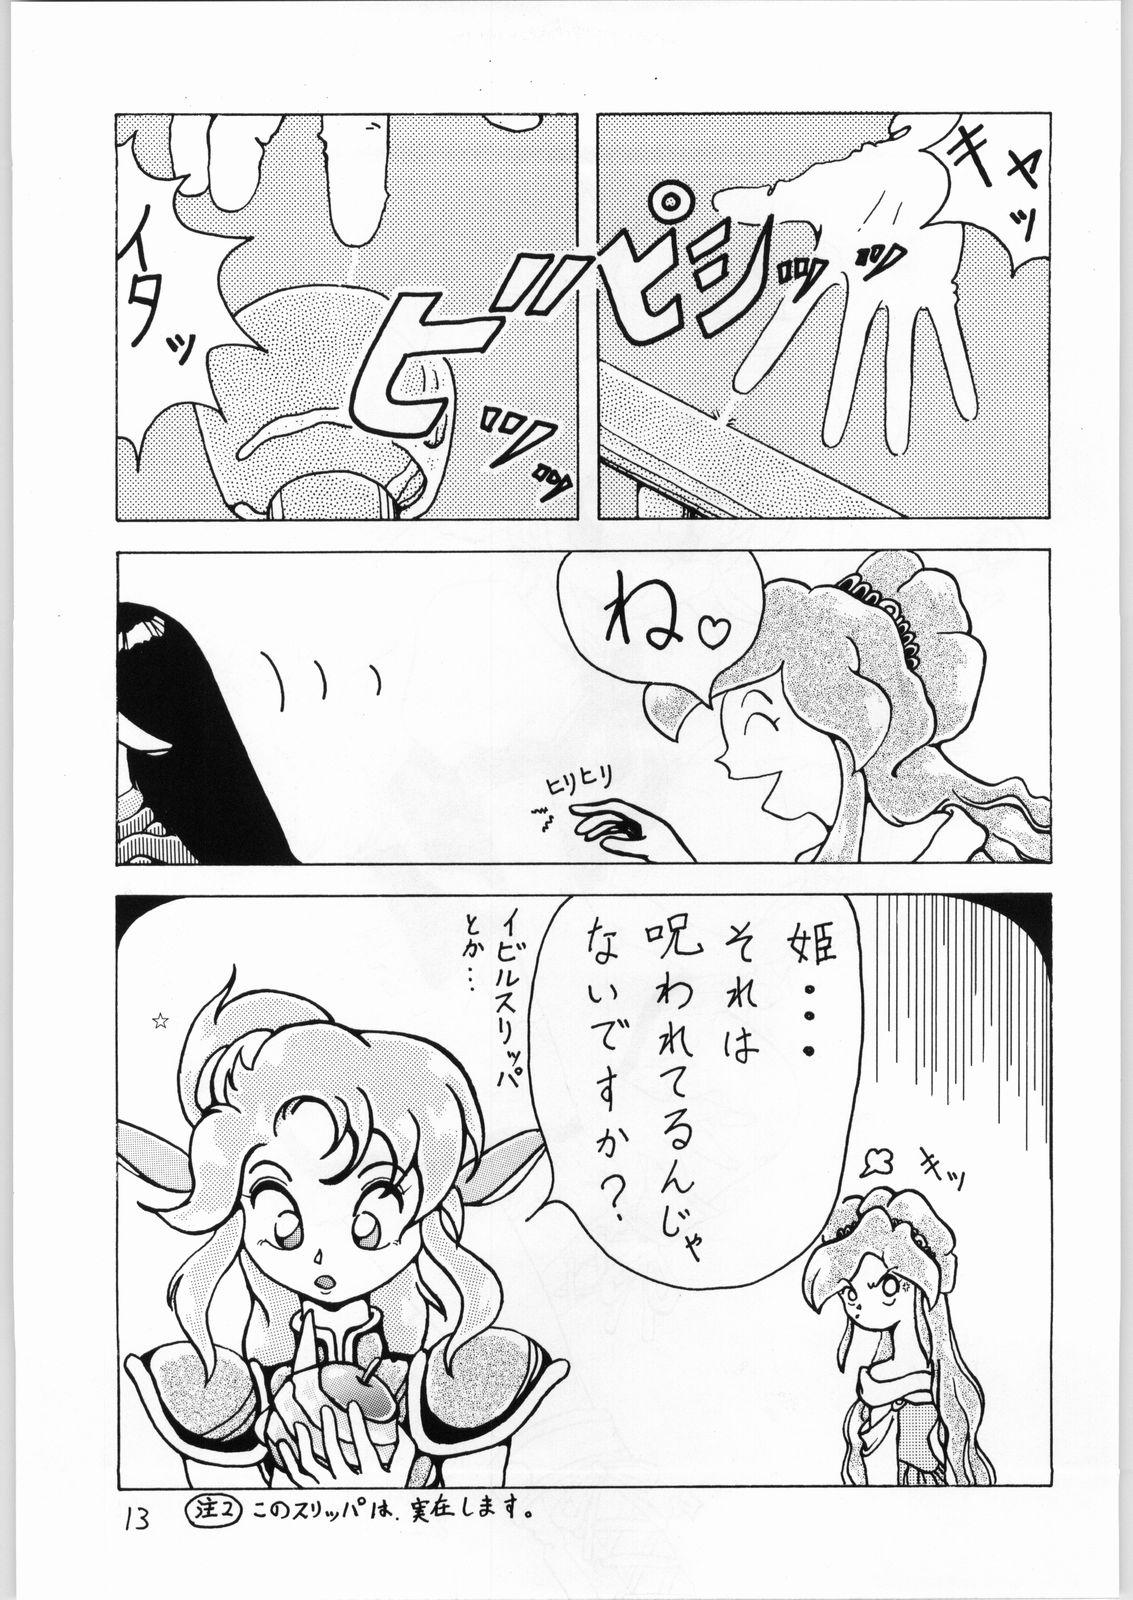 Eating Dance of Princess 3 - Sailor moon Tenchi muyo Akazukin cha cha Minky momo Ng knight lamune and 40 Tites - Page 12